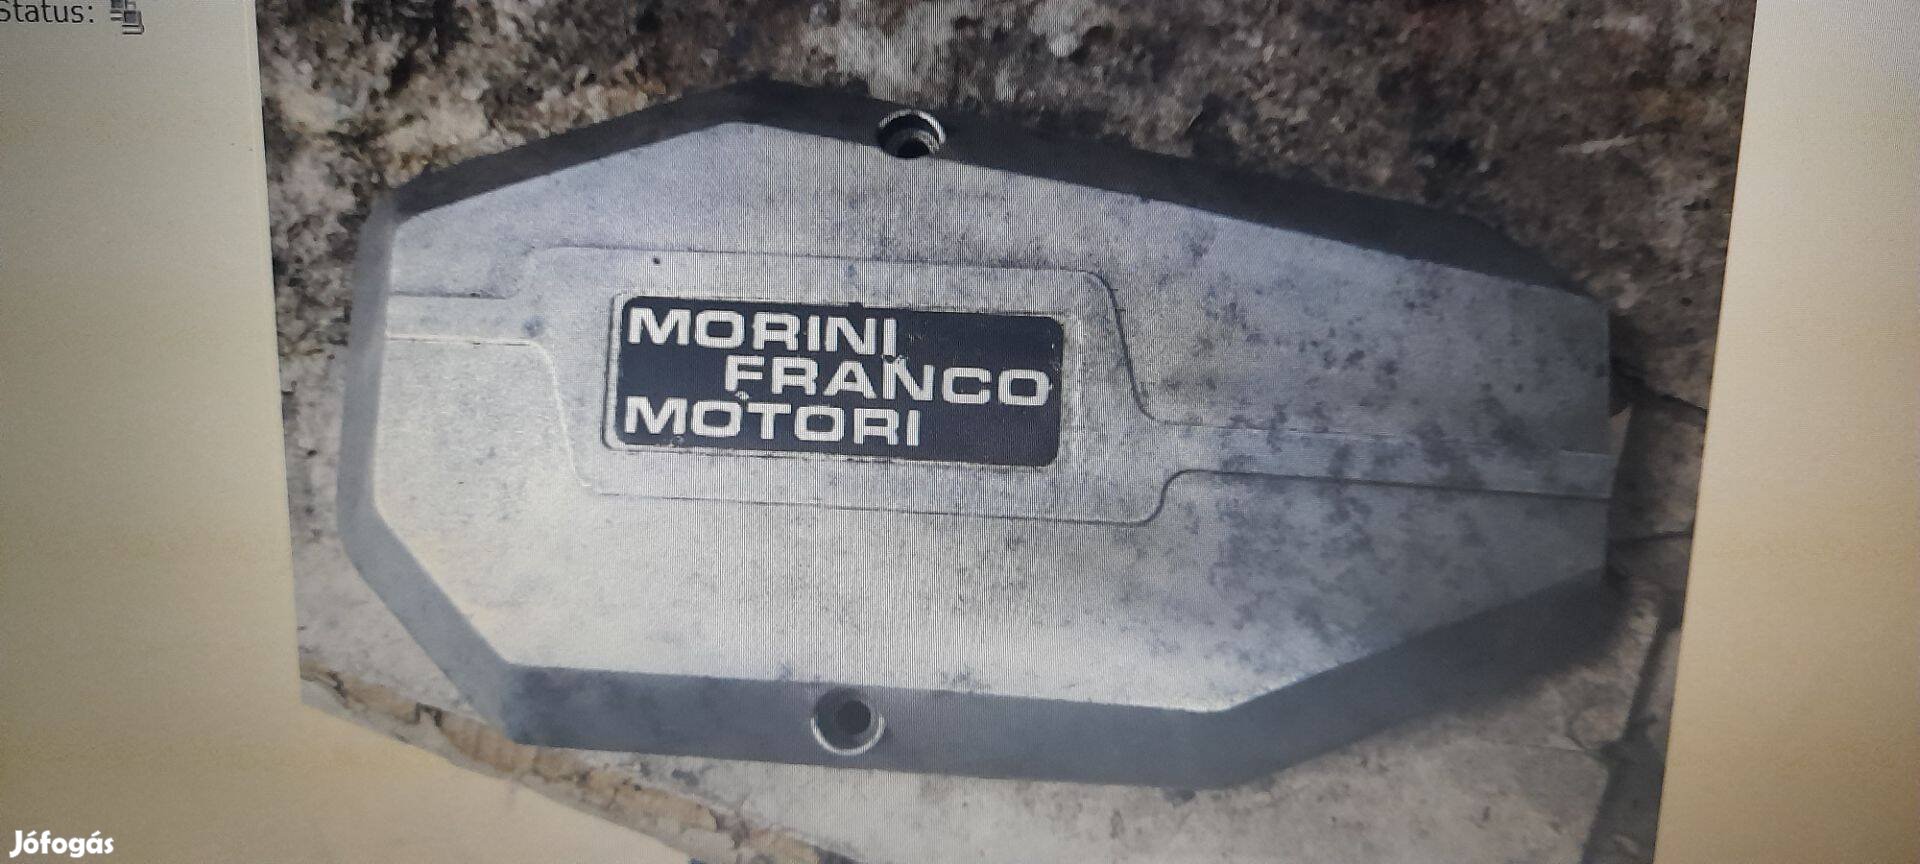 Keresek: Morini Franco Motori gyújtásfedelet